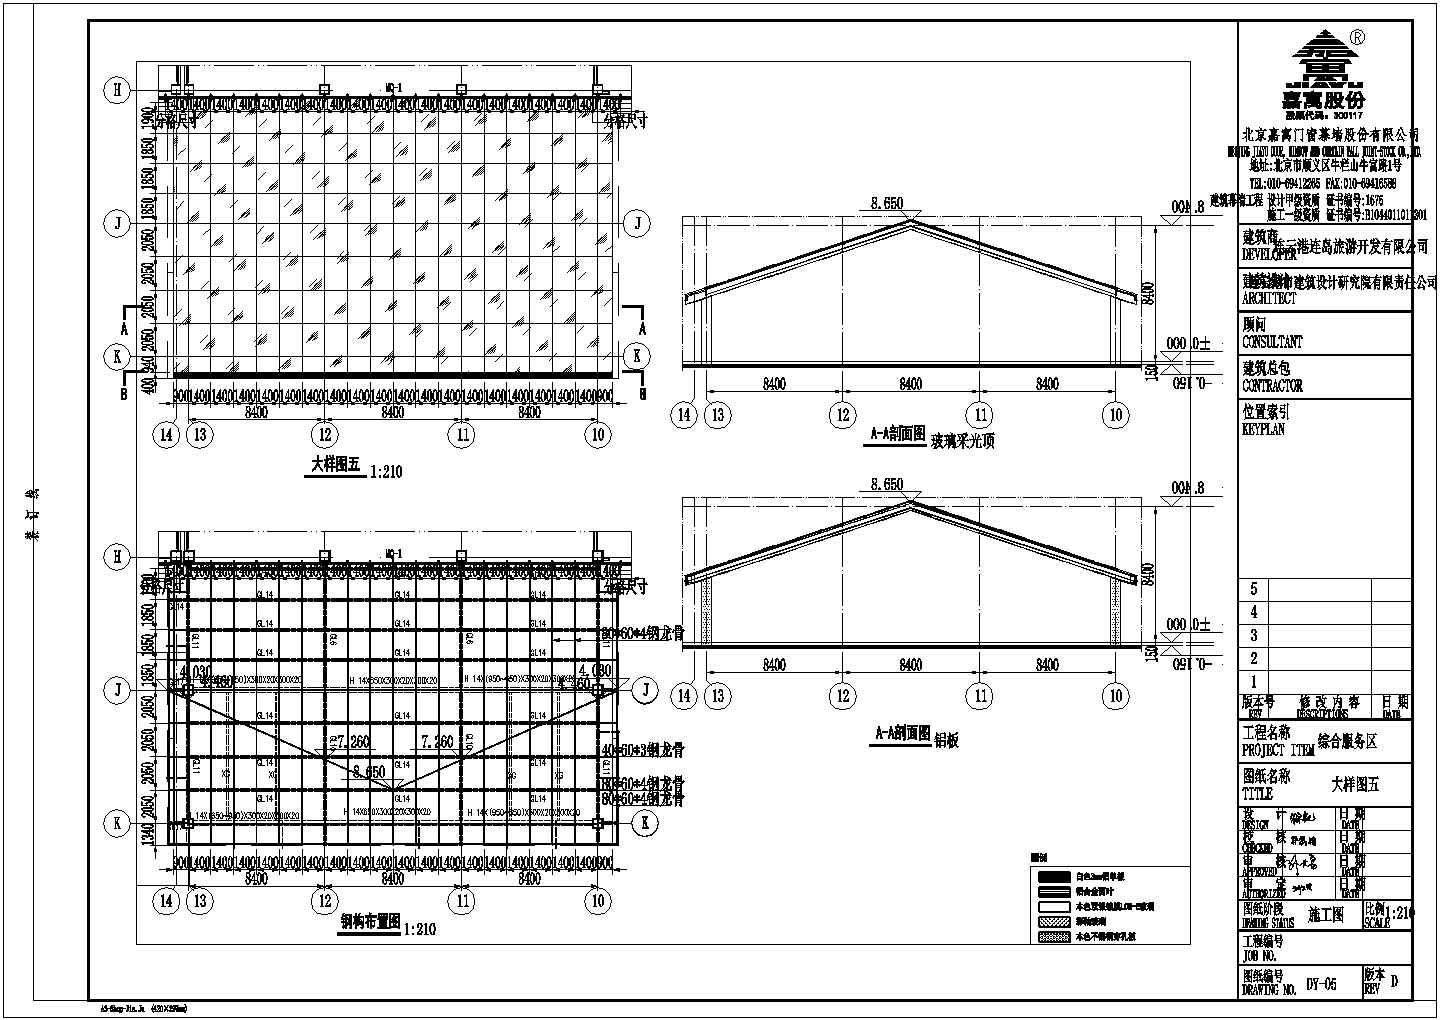 连云港综合服务区幕墙建筑设计施工图